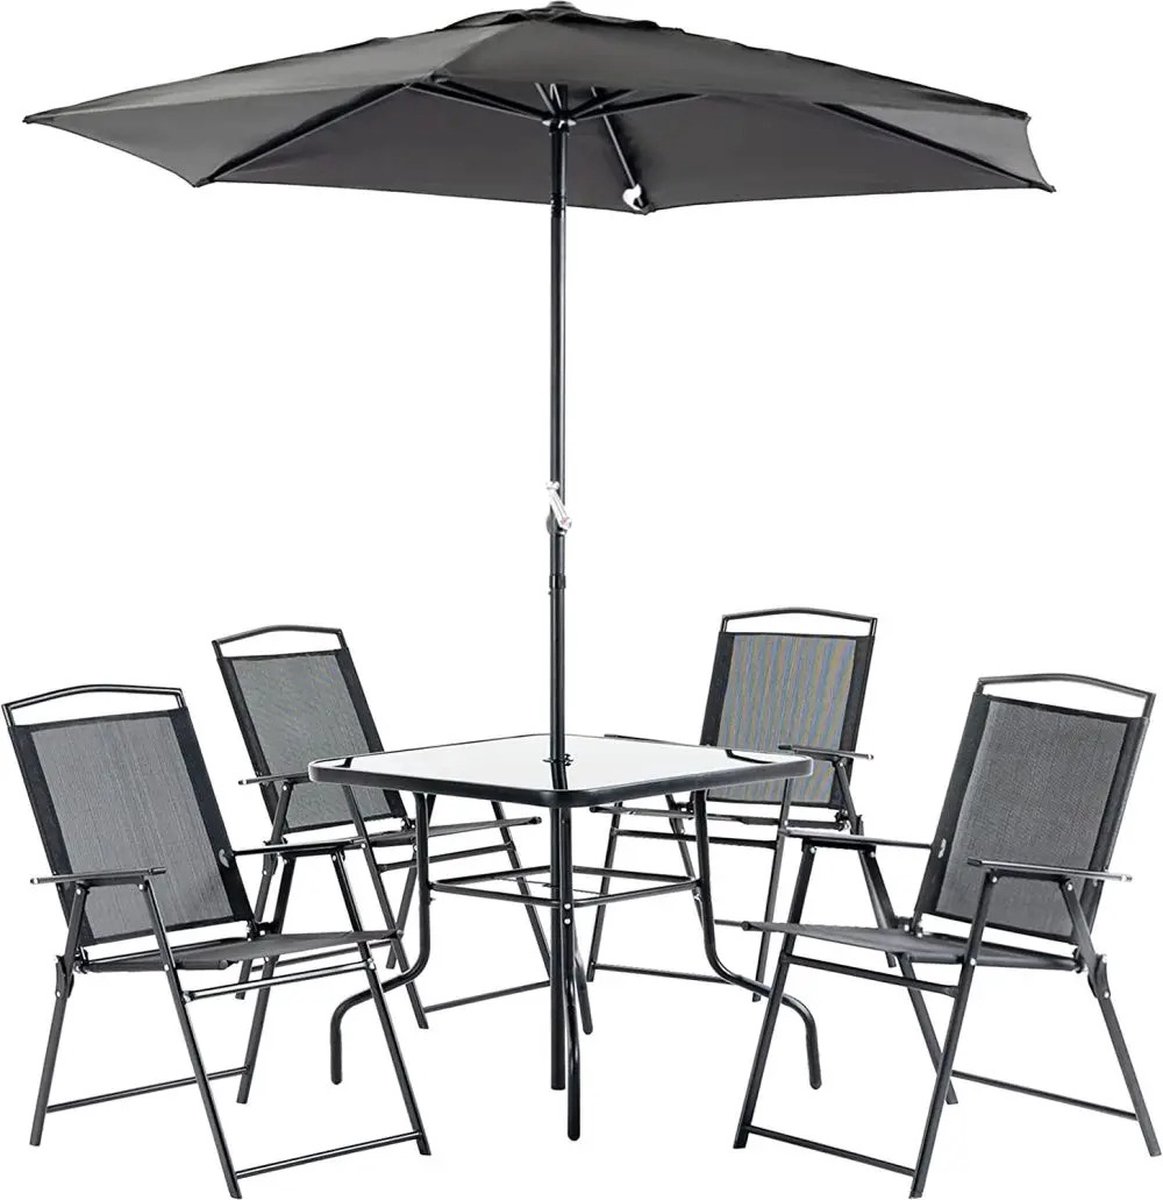 B.O.S. Tuinset Met Parasol - 4 Comfortabele Klapstoelen - Glazen Eettafel - Parasol - Zwart